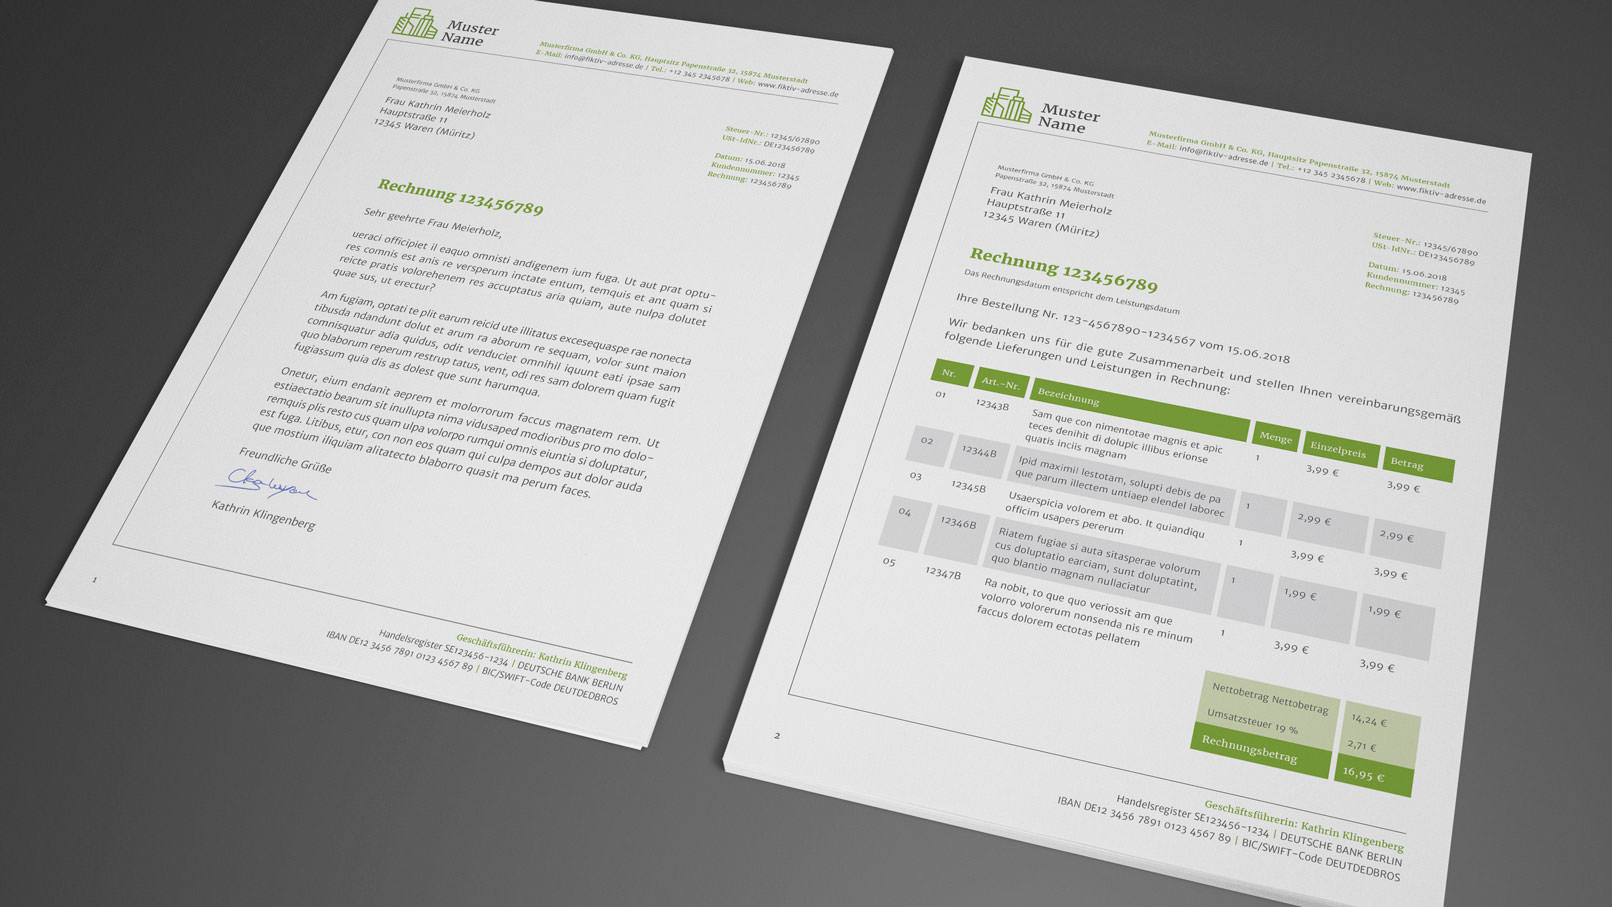 Rechnungsvorlagen und Anschreiben in Grün, bearbeitbar in Word, InDesign und CorelDRAW